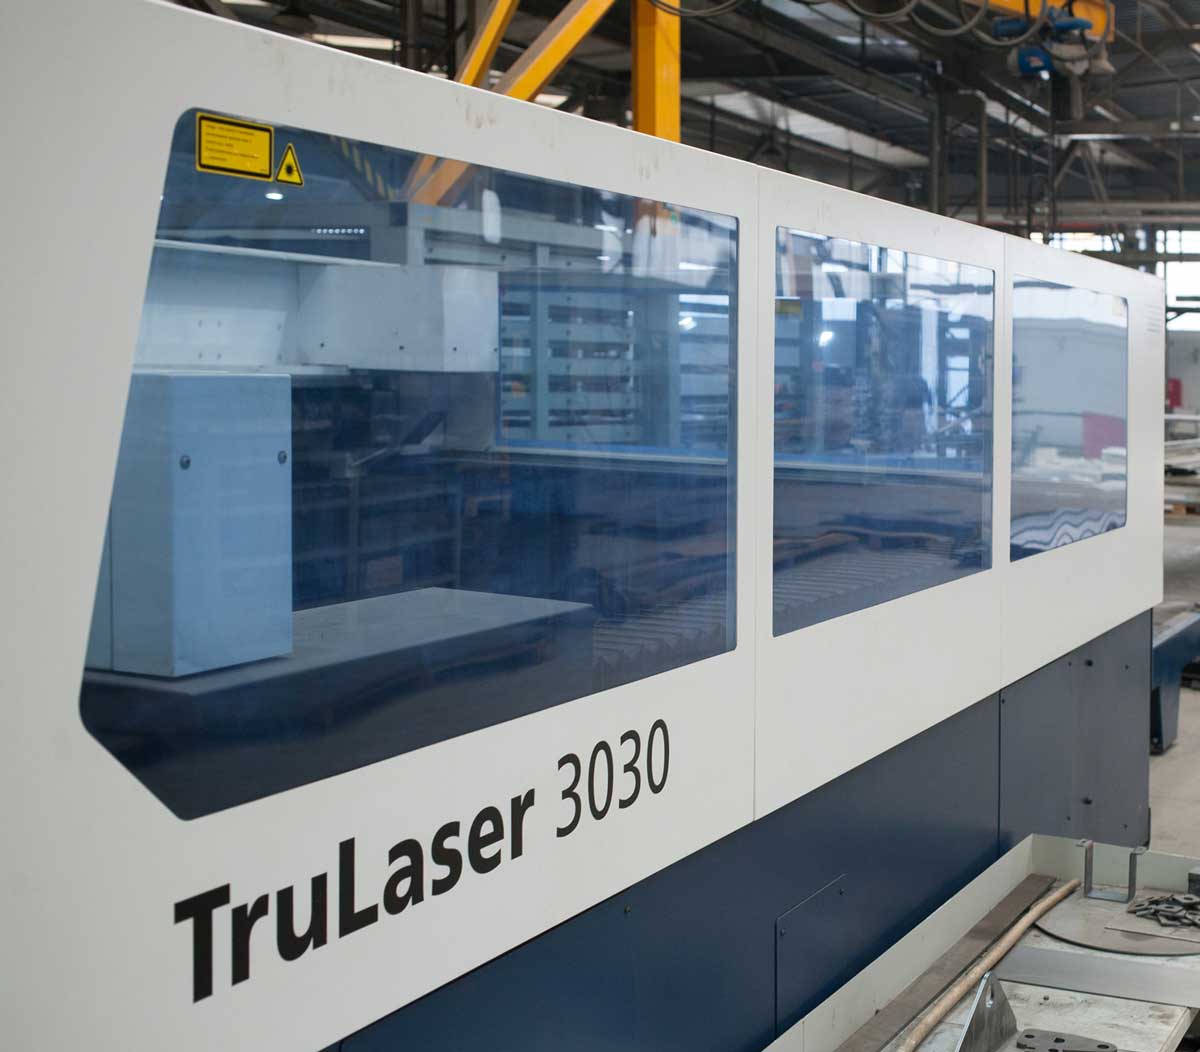 Wycinarka laserowa 3030 będąca częścią parku maszynowego firmy Bramar to stworzony przez firmę TRUMPF laser CO2 TruFlow, wytrzymały i niezawodny, który wykonuje gładkie krawędzie tnące nie wymagające na ogół obróbki dodatkowej.